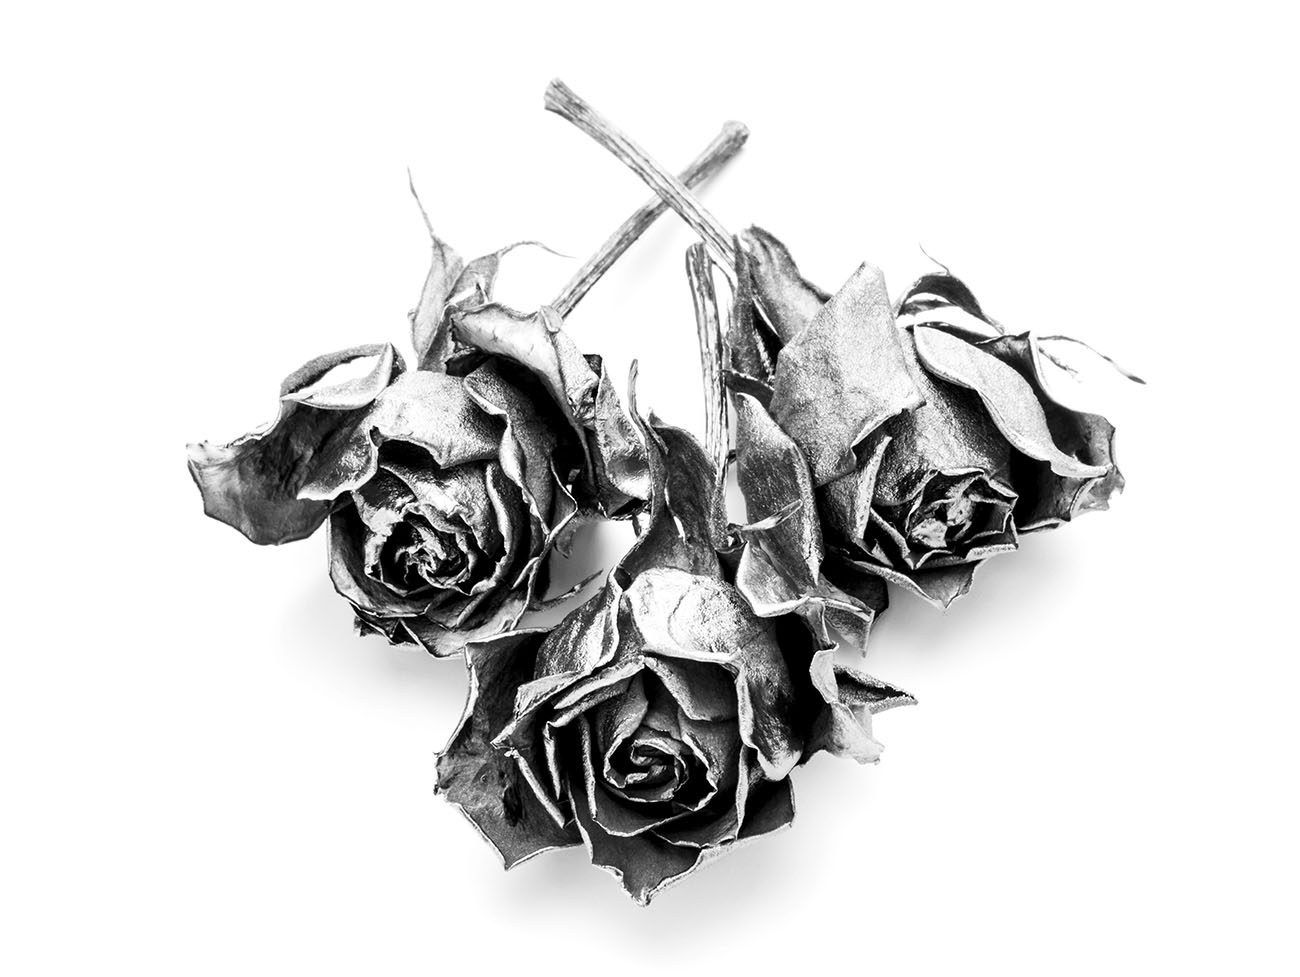 Platinum roses